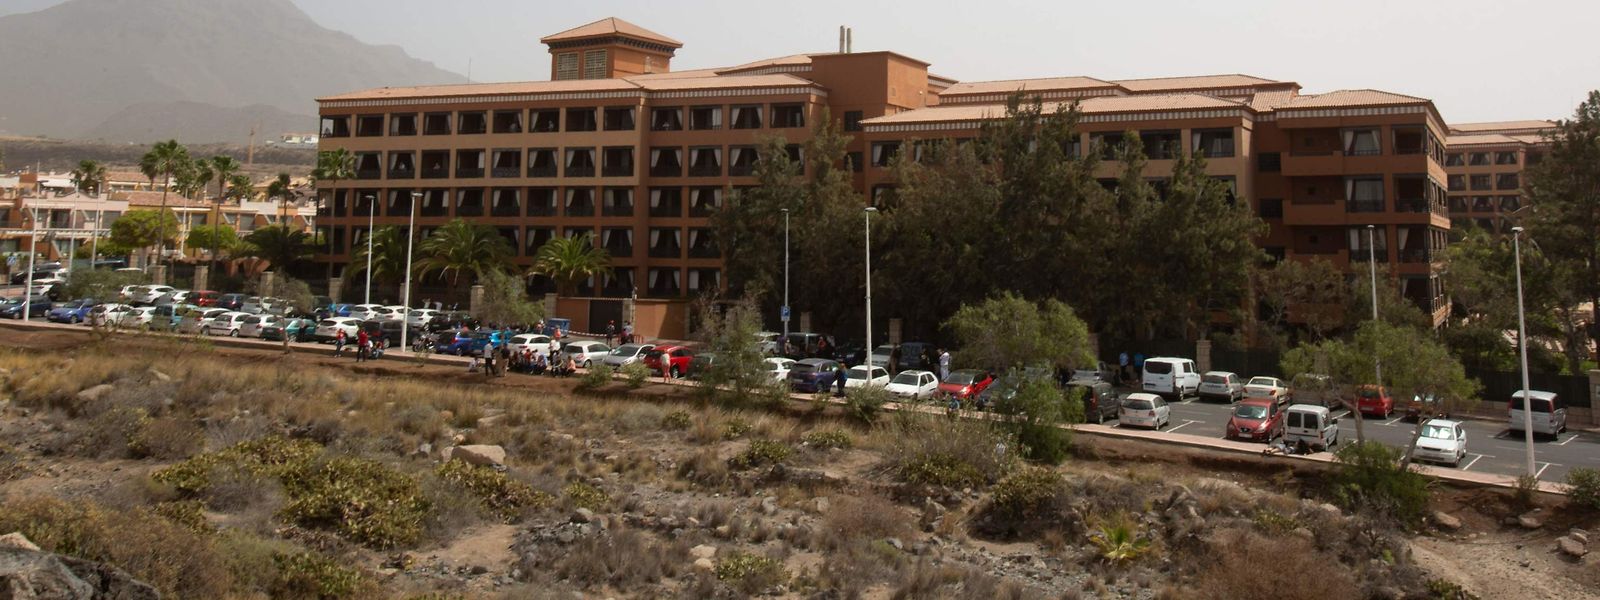 Rund 1000 Gäste des H10 Costa Adeje Palace Hotel auf Teneriffa dürfen das Haus derzeit nicht verlassen. 